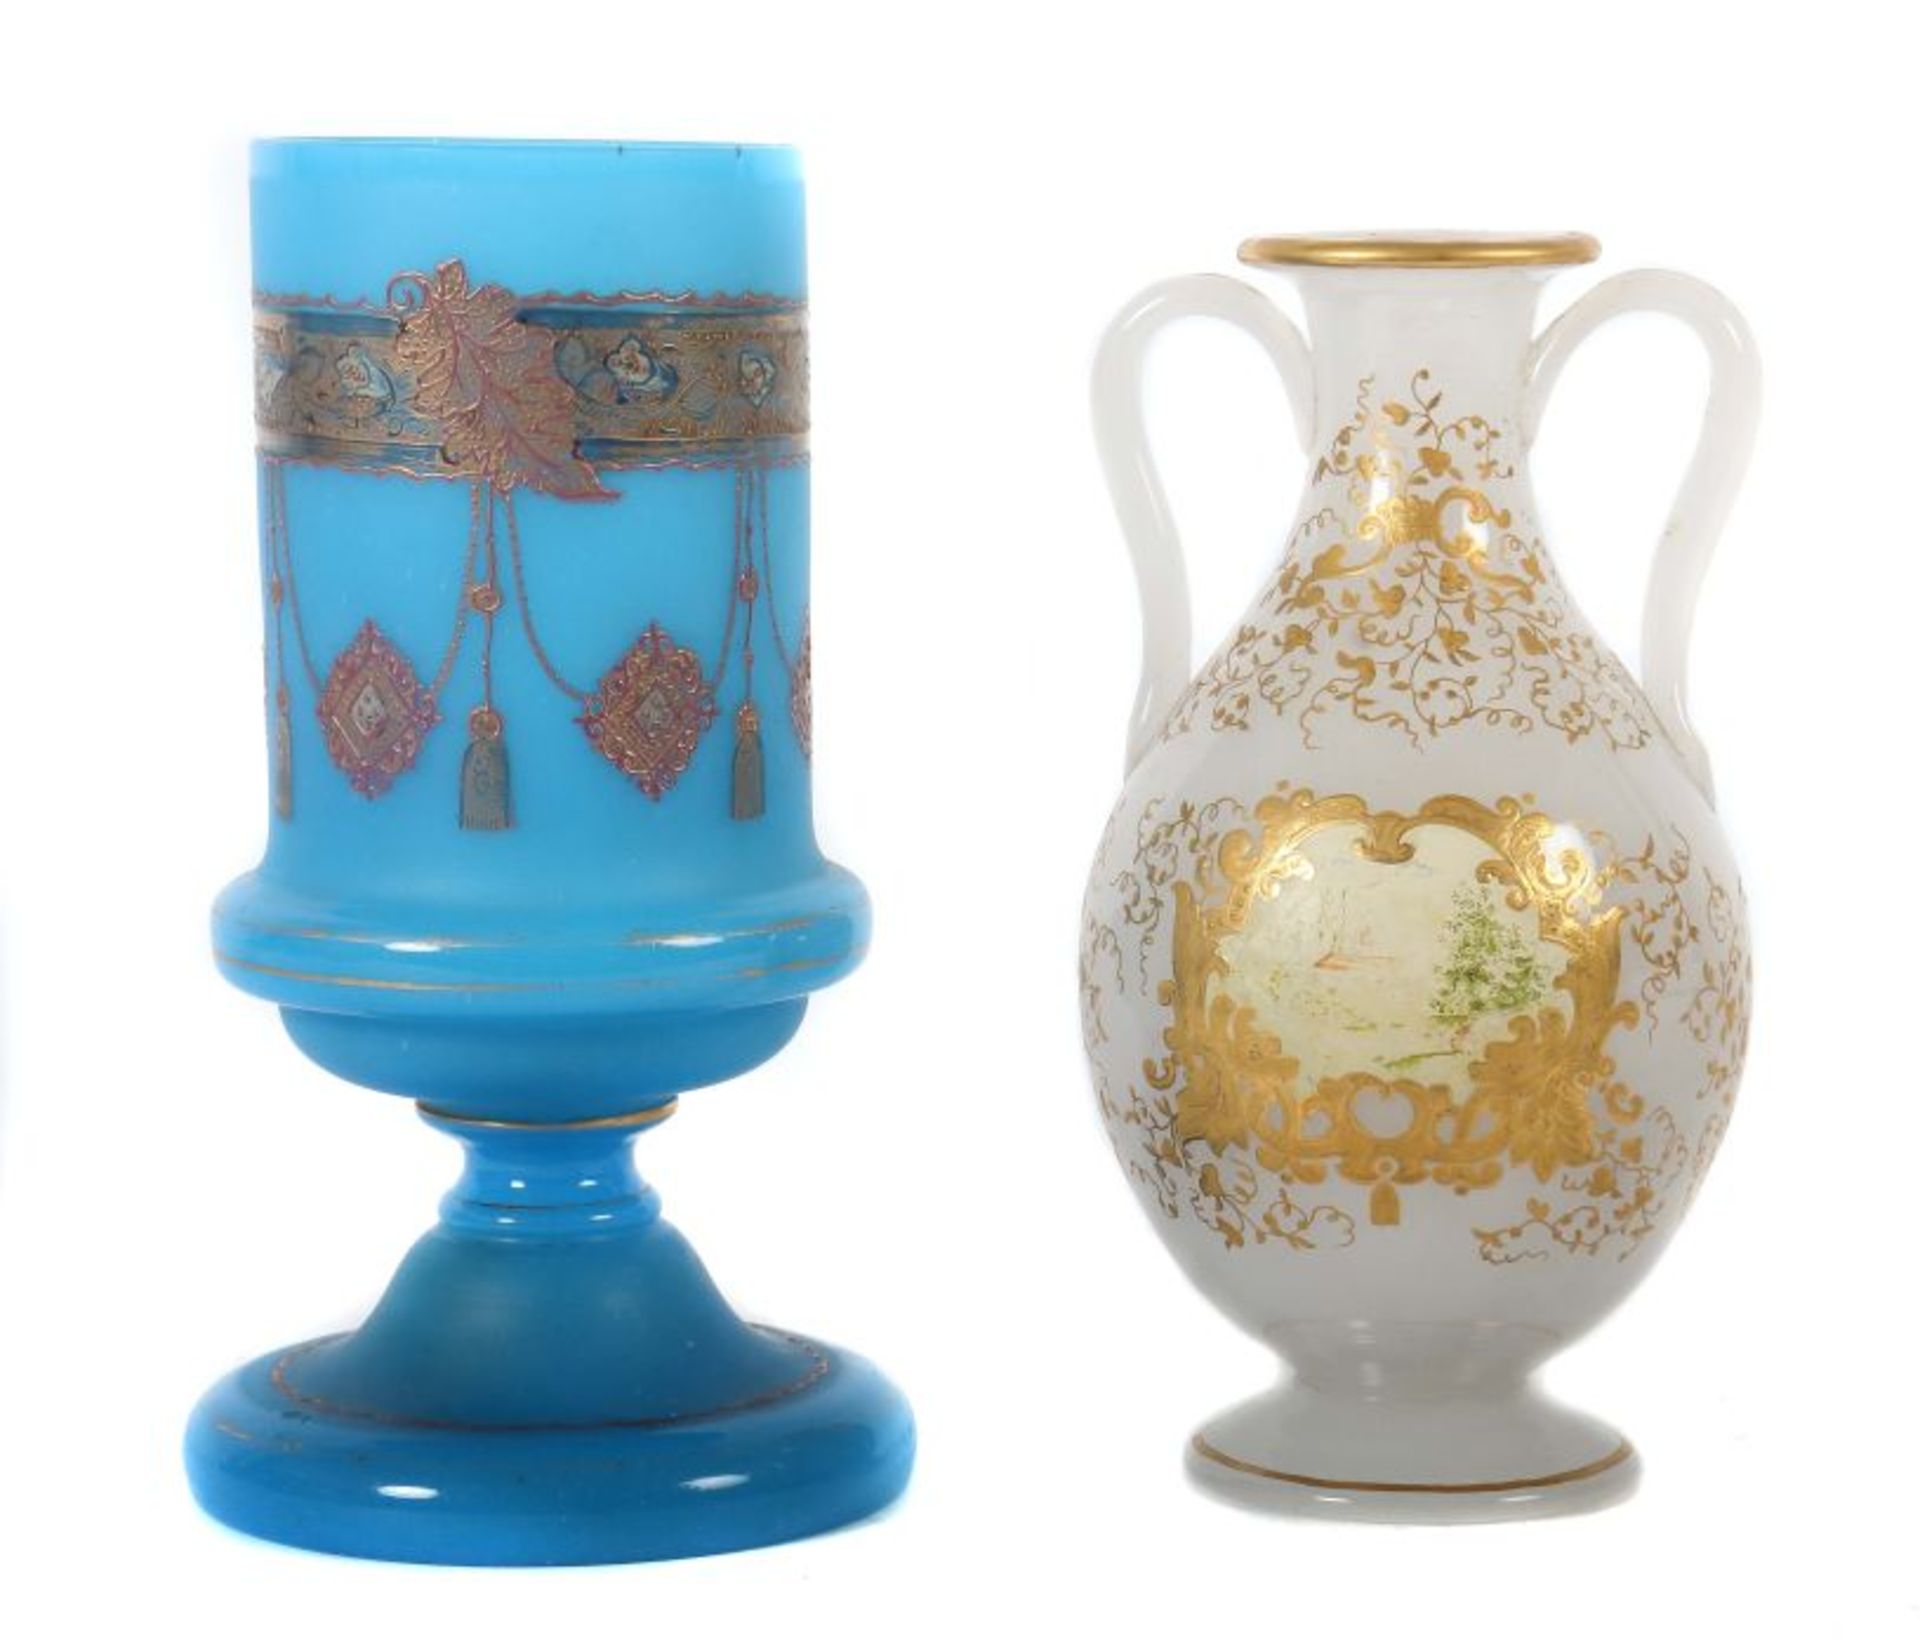 Zwei Vasen Böhmen, 19. Jh., best. aus Opalinglasvase, modelgeblasen, mit Emailfarben bemaltes Dekor;